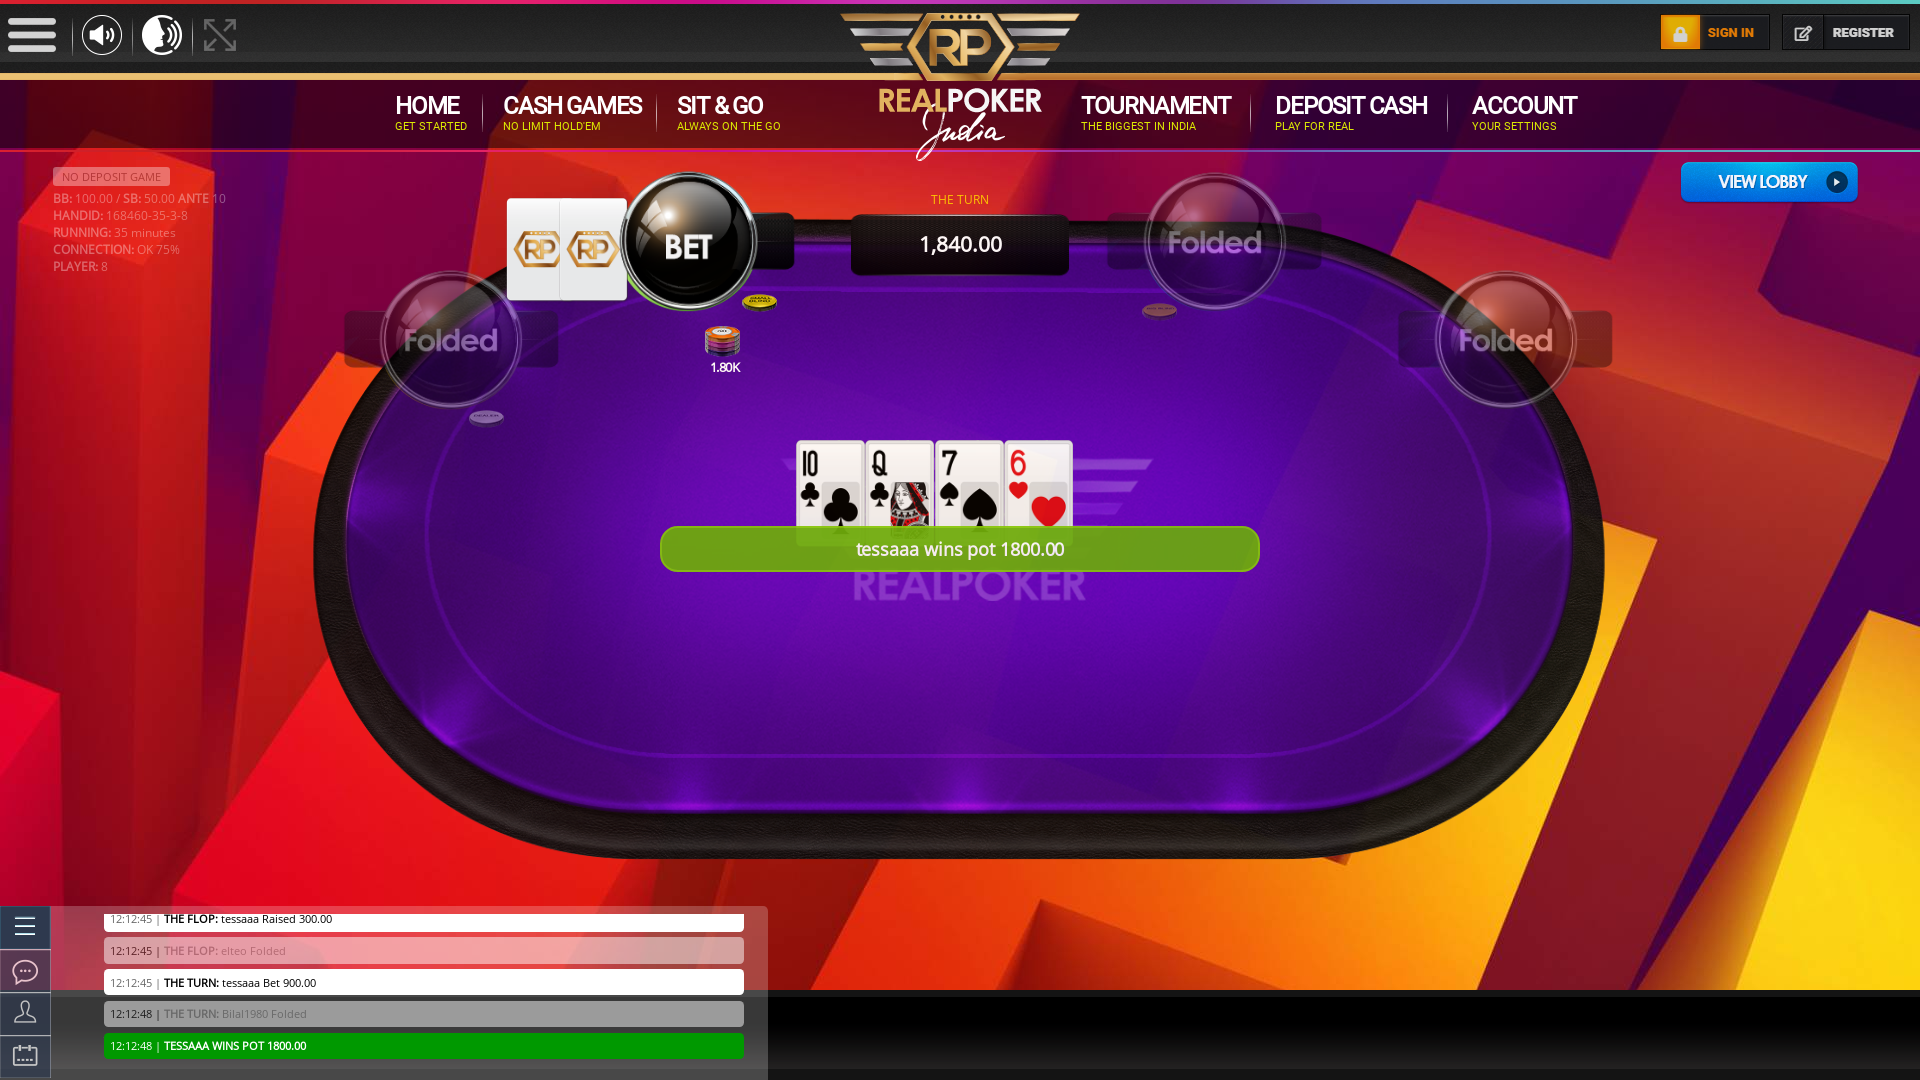 imran playing online poker on the Bhubaneswar table